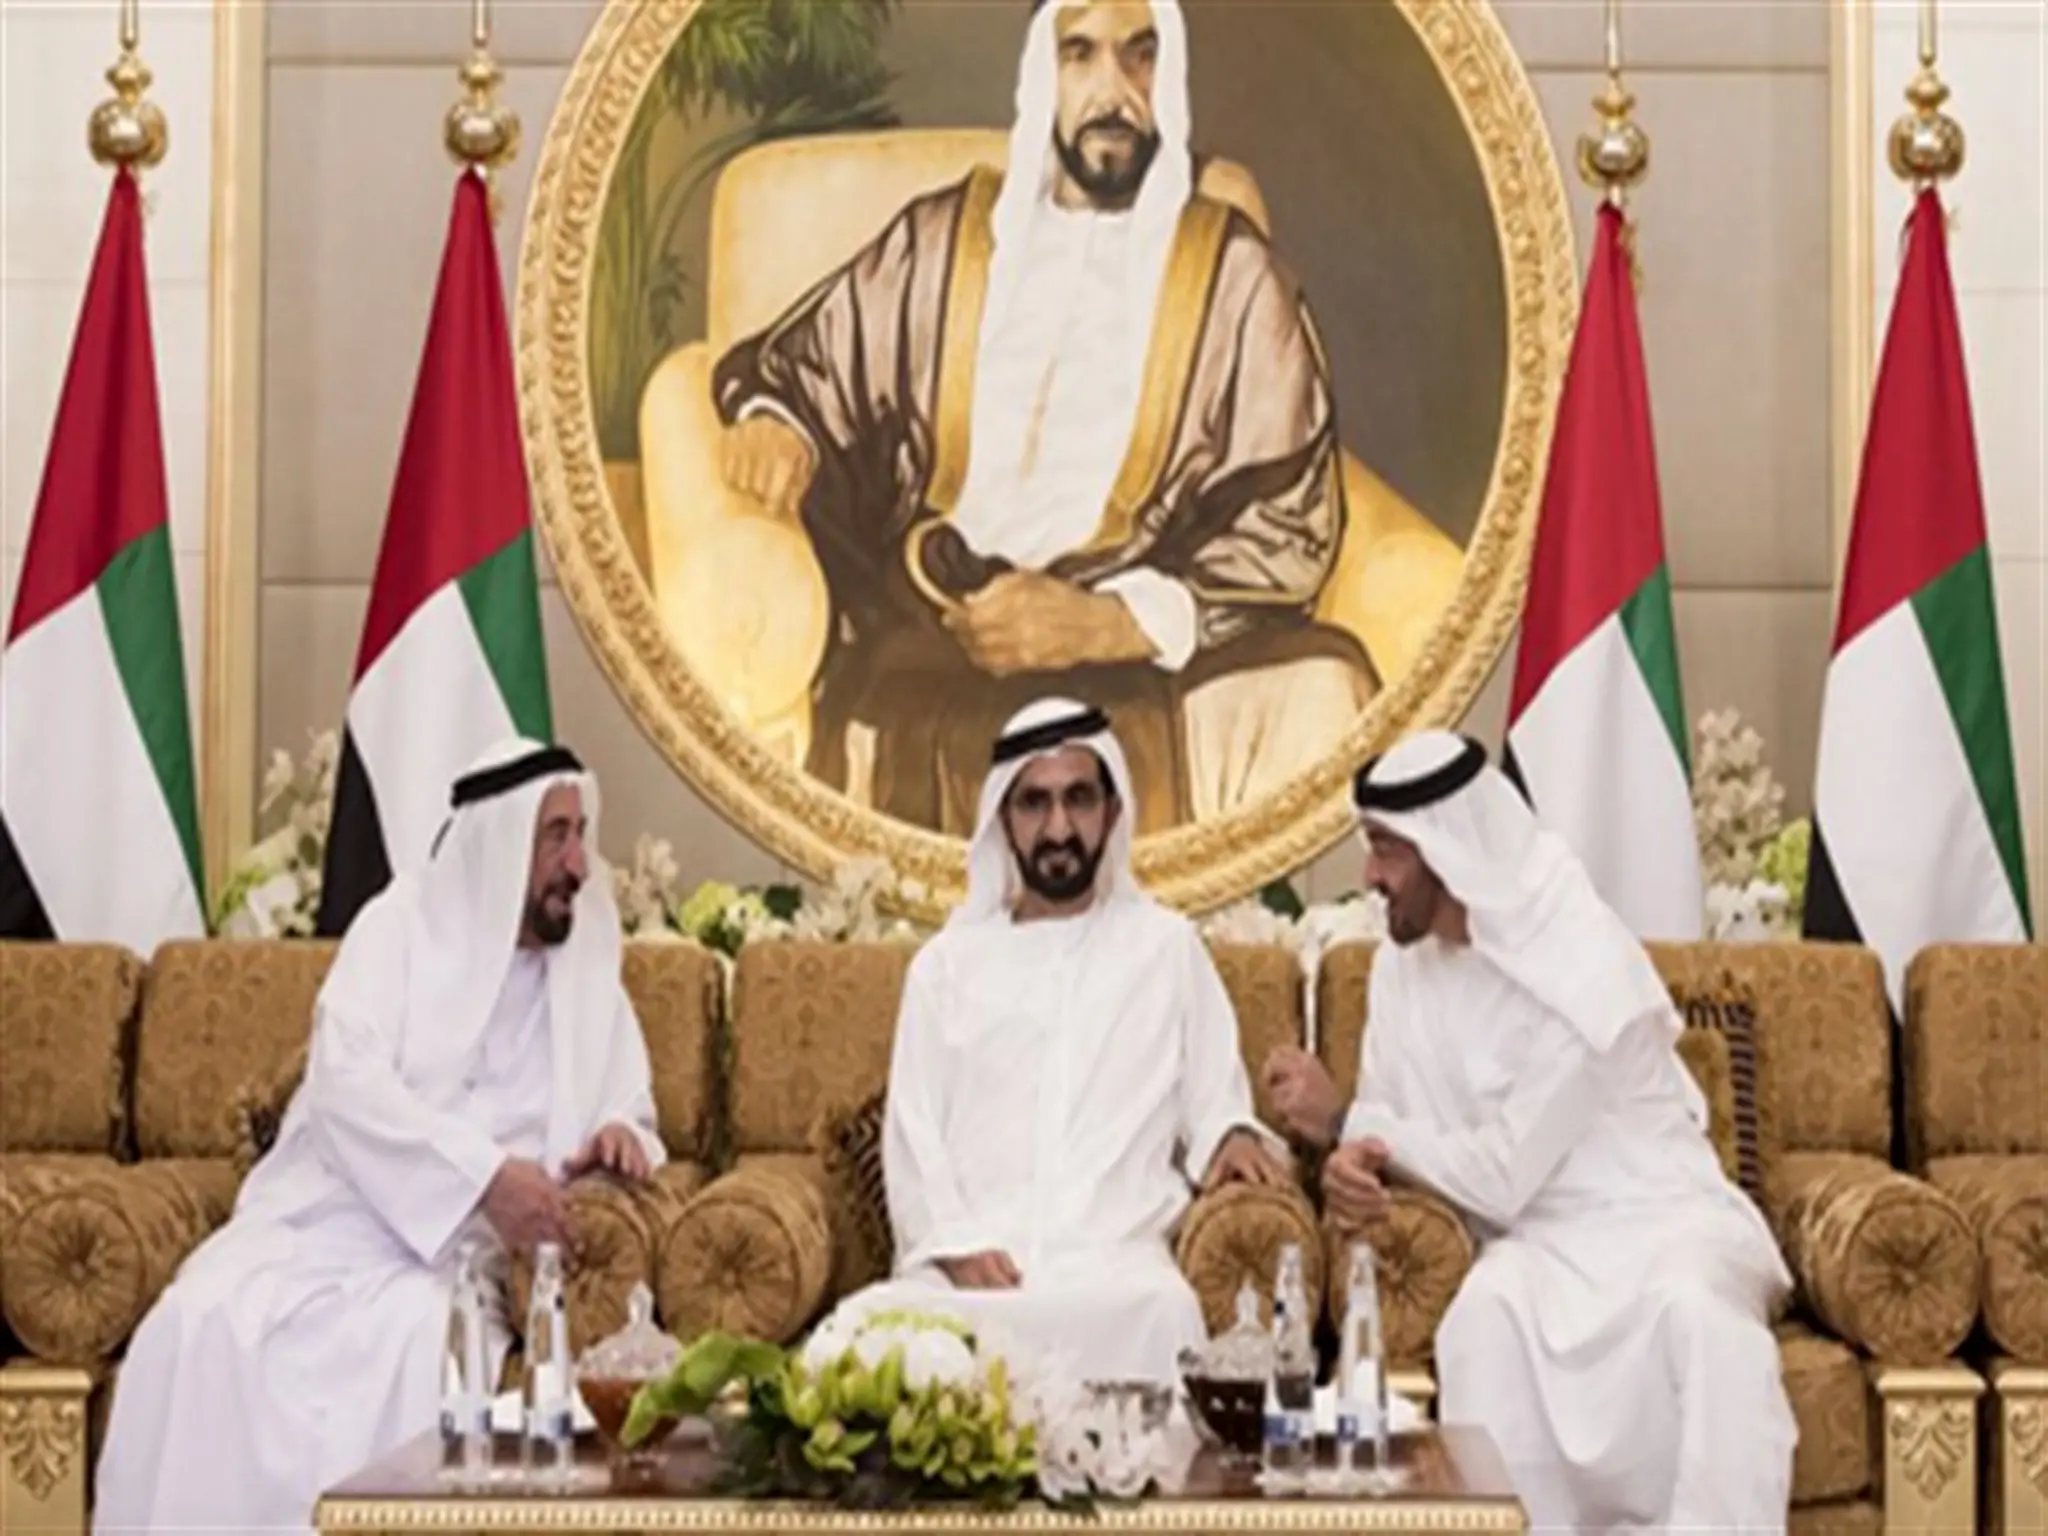 عاجل الإمارات | إنجاز عربى تاريخى جديد تعلن عنه الأسرة الحاكمة اليوم